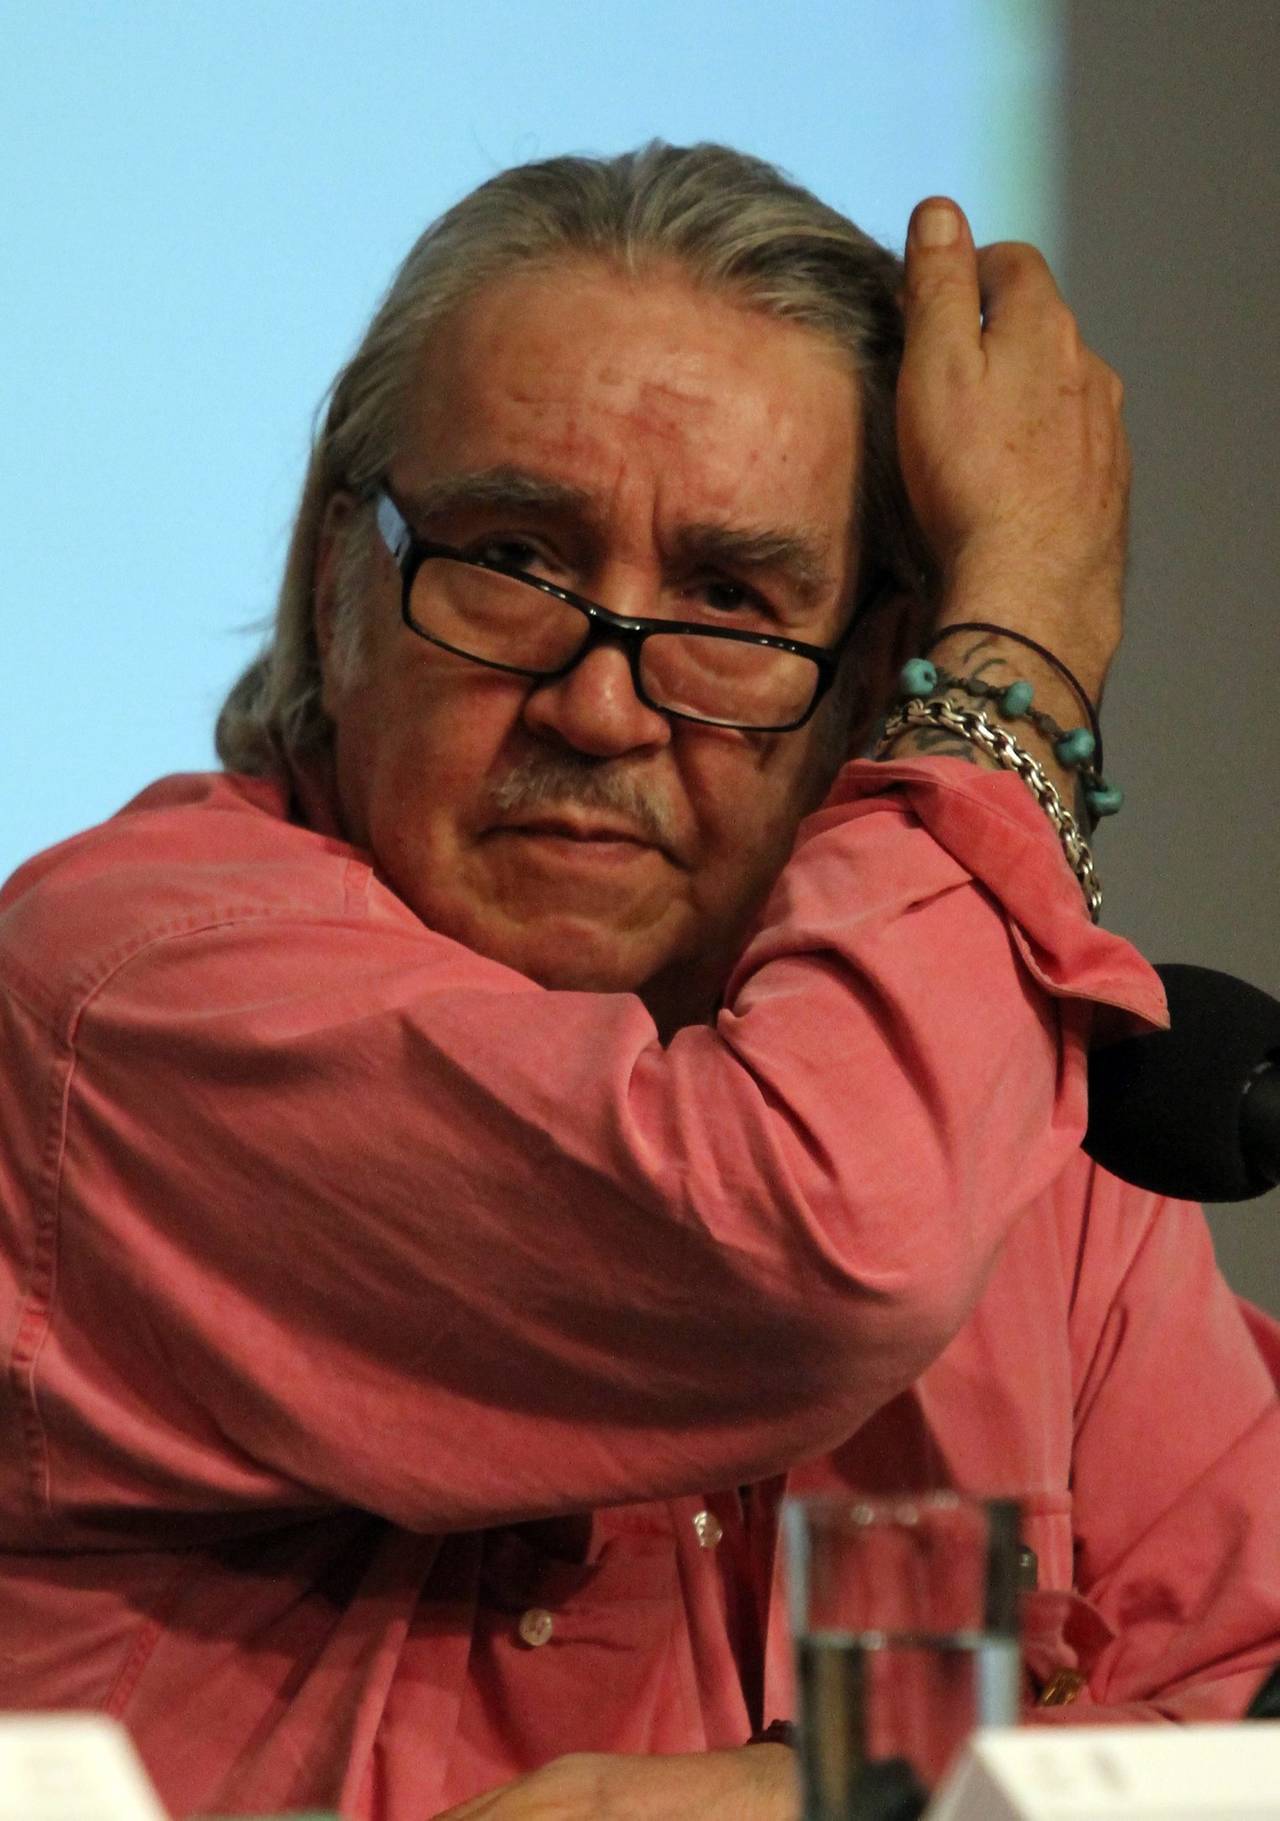 Un año. El escritor mexicano Guillermo Samperio murió en diciembre del 2016, por un paro cardiorrespiratorio, a la edad de 68 años, dejando más de 50 libros publicados en casi todos los géneros.